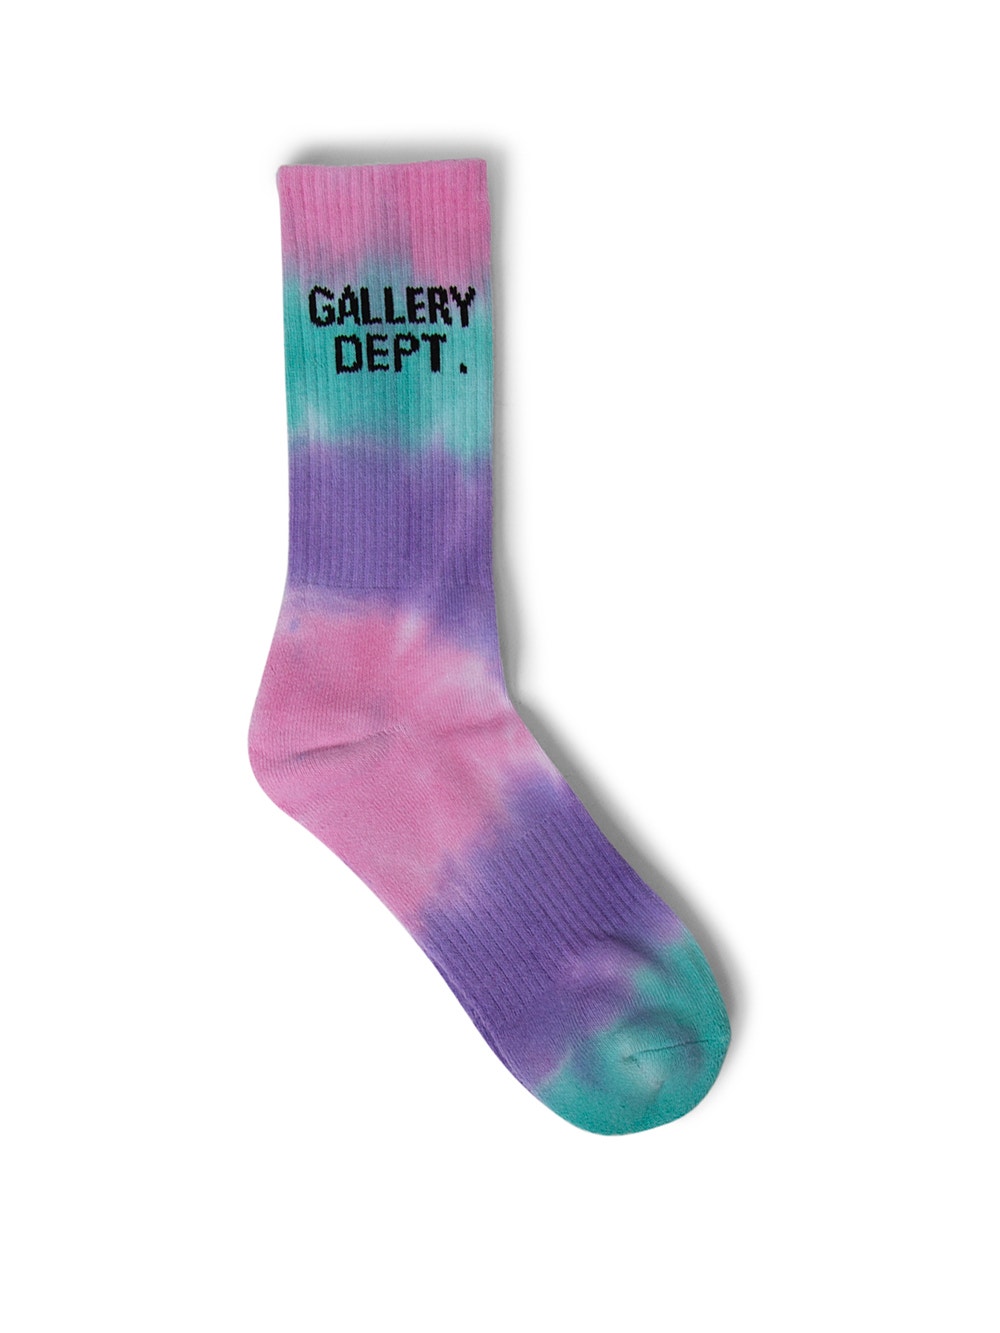 Los Angeles print tie dye socks